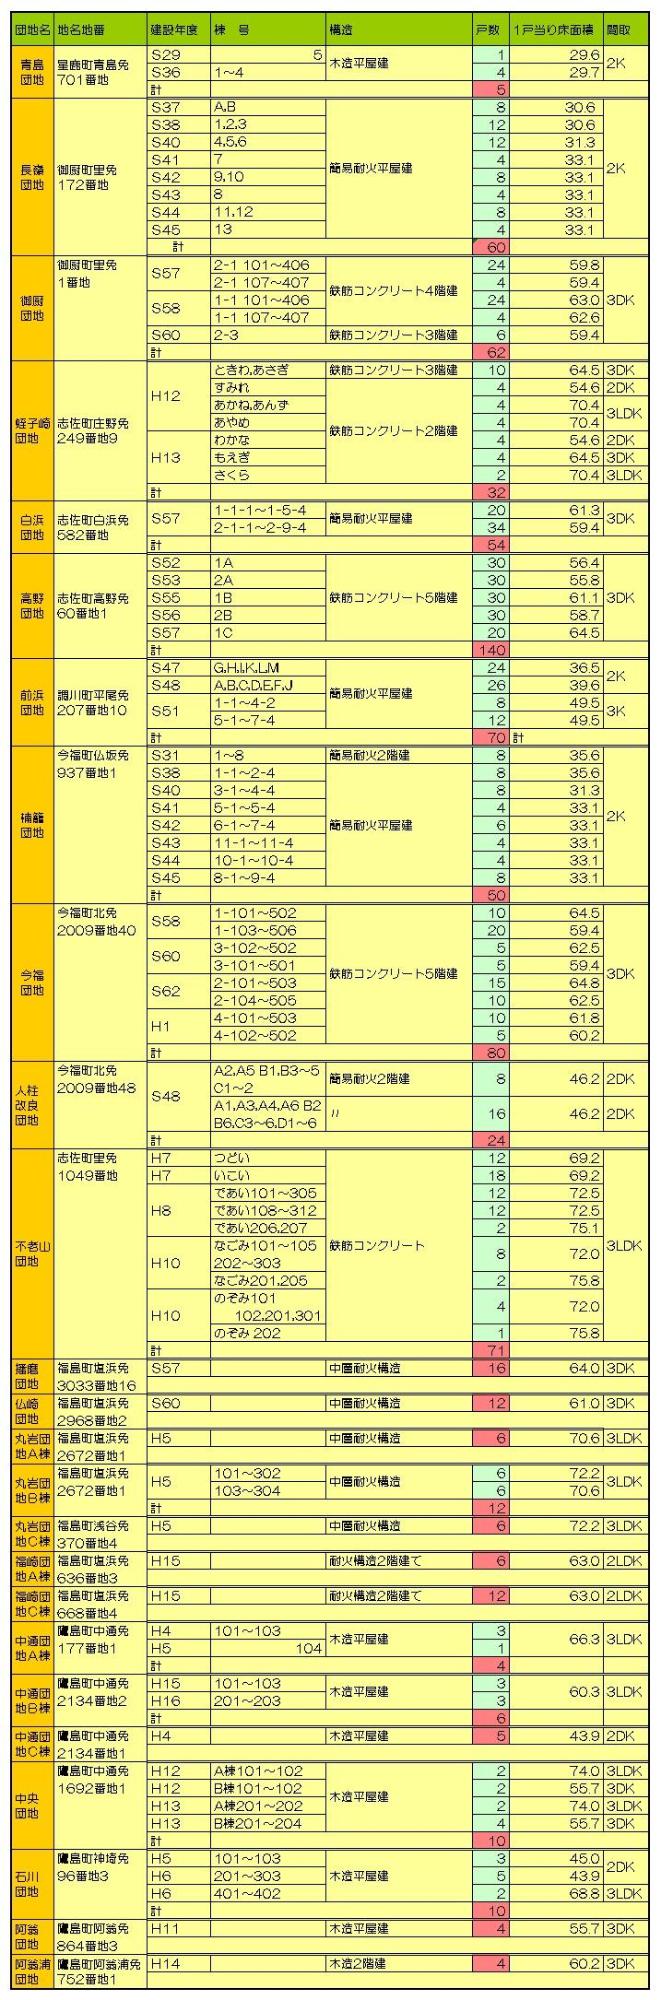 松浦市の公営住宅の一覧表